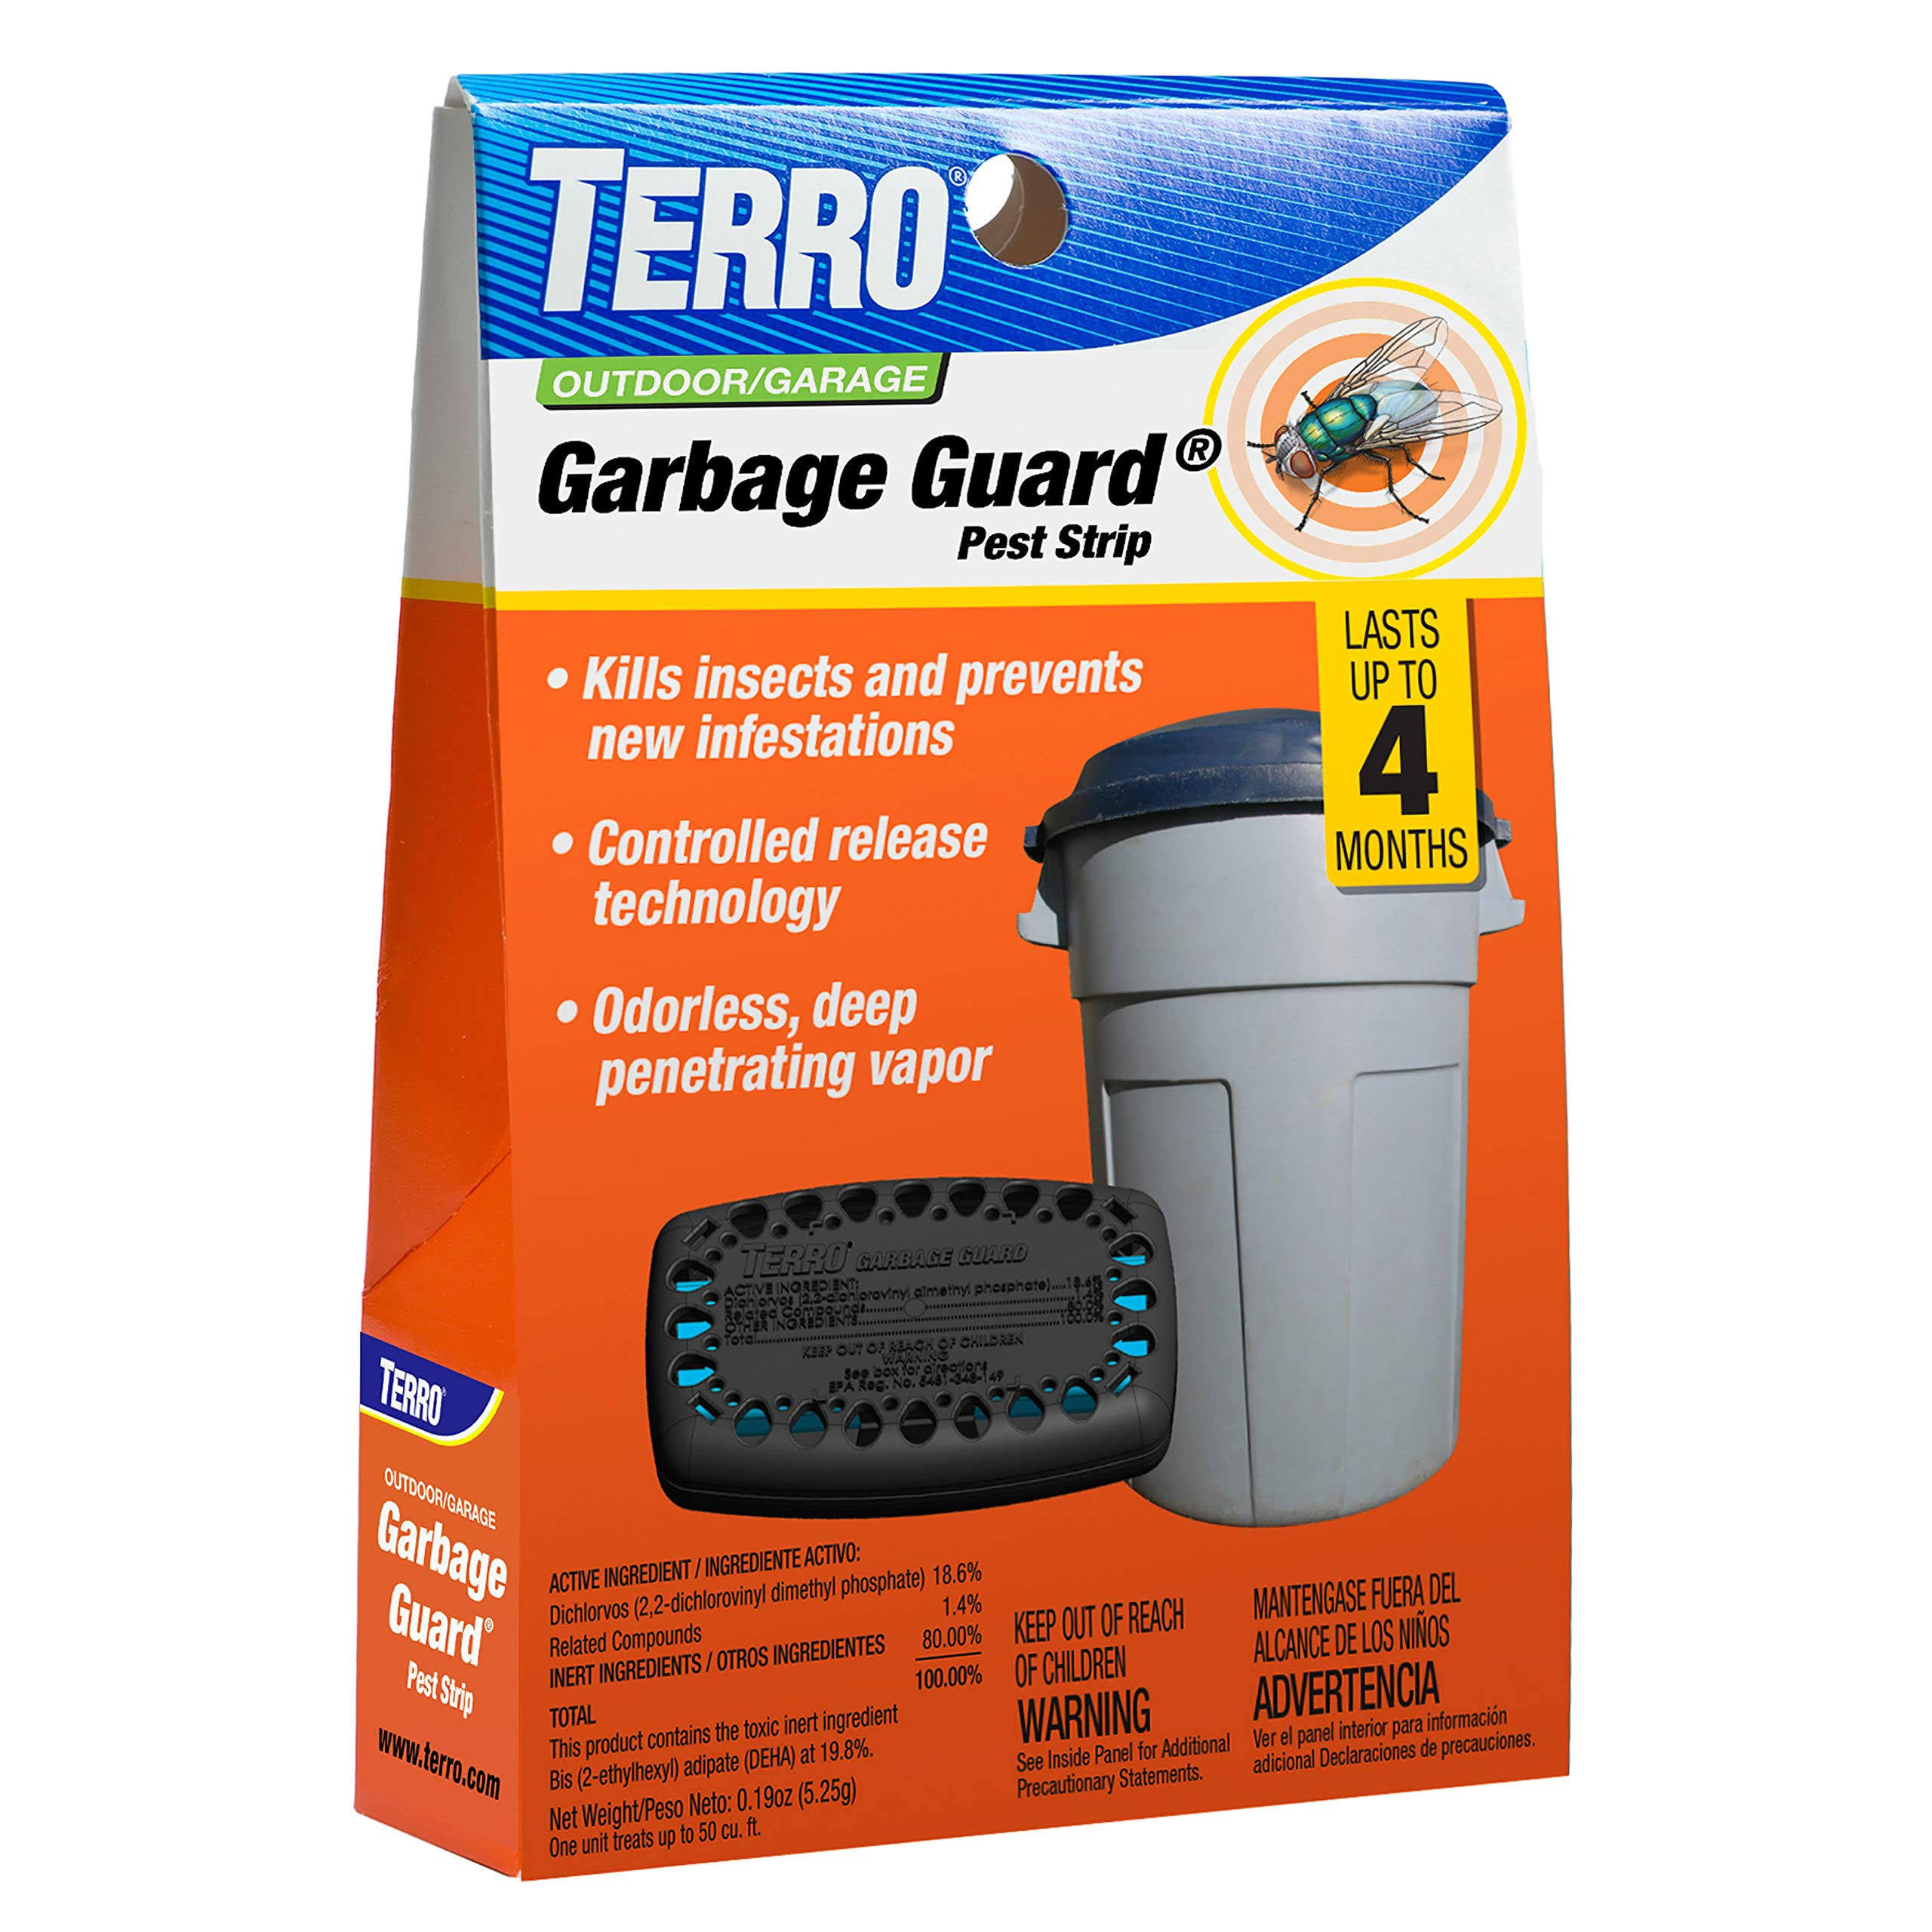 Terro Garbage Guard